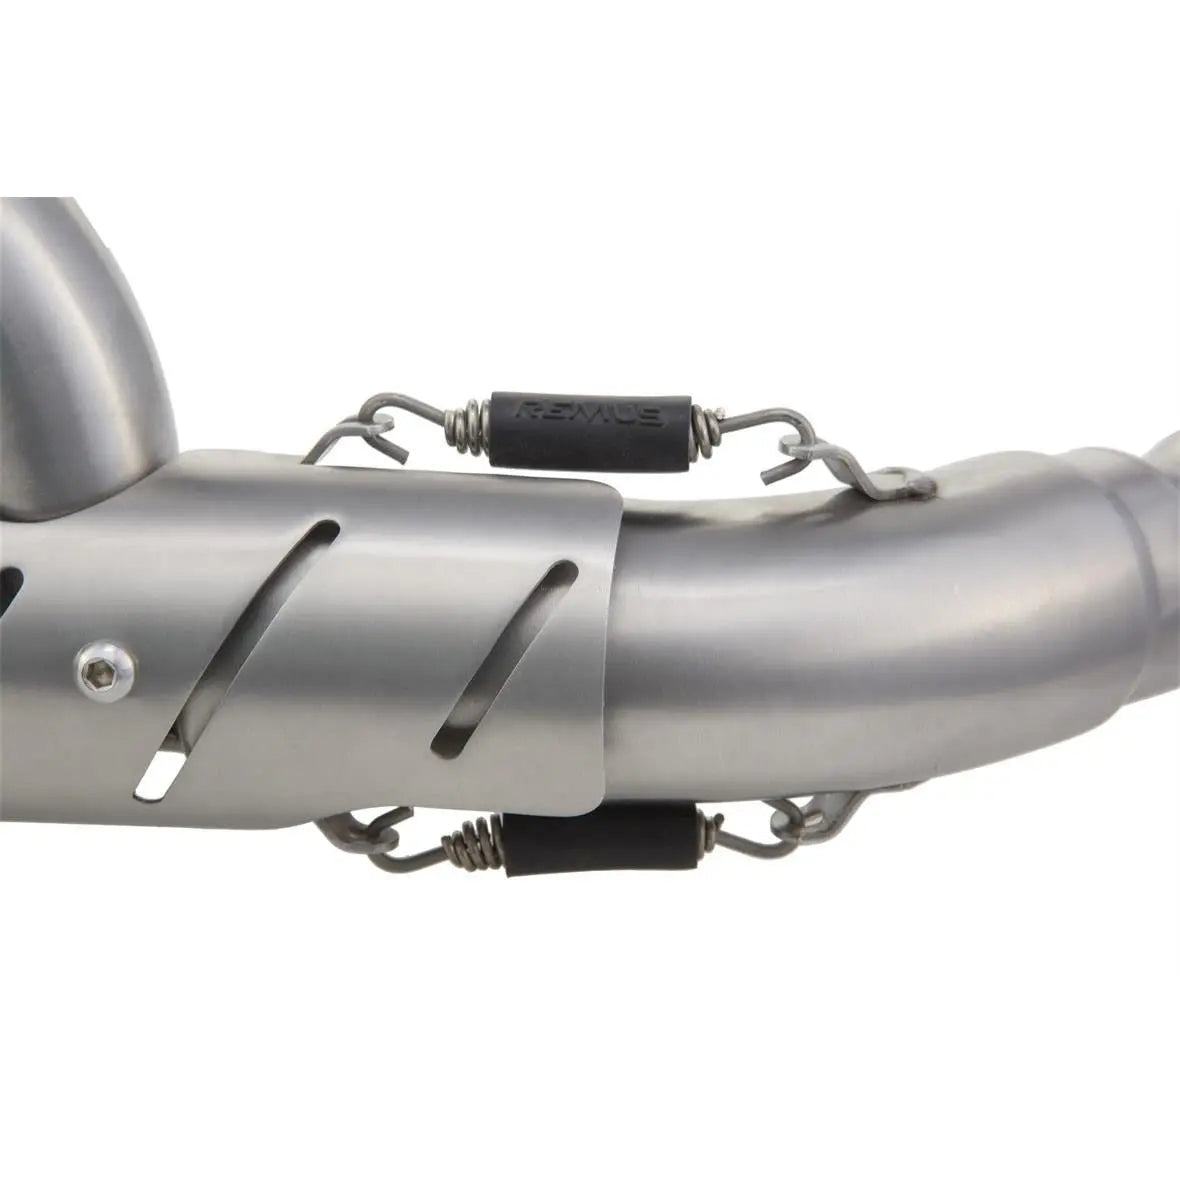 Racing Exhaust REMUS Dual Flow | Vespa GTS Models i.e. 125-300cc (-`16) Remus 665.95 Falan Parts